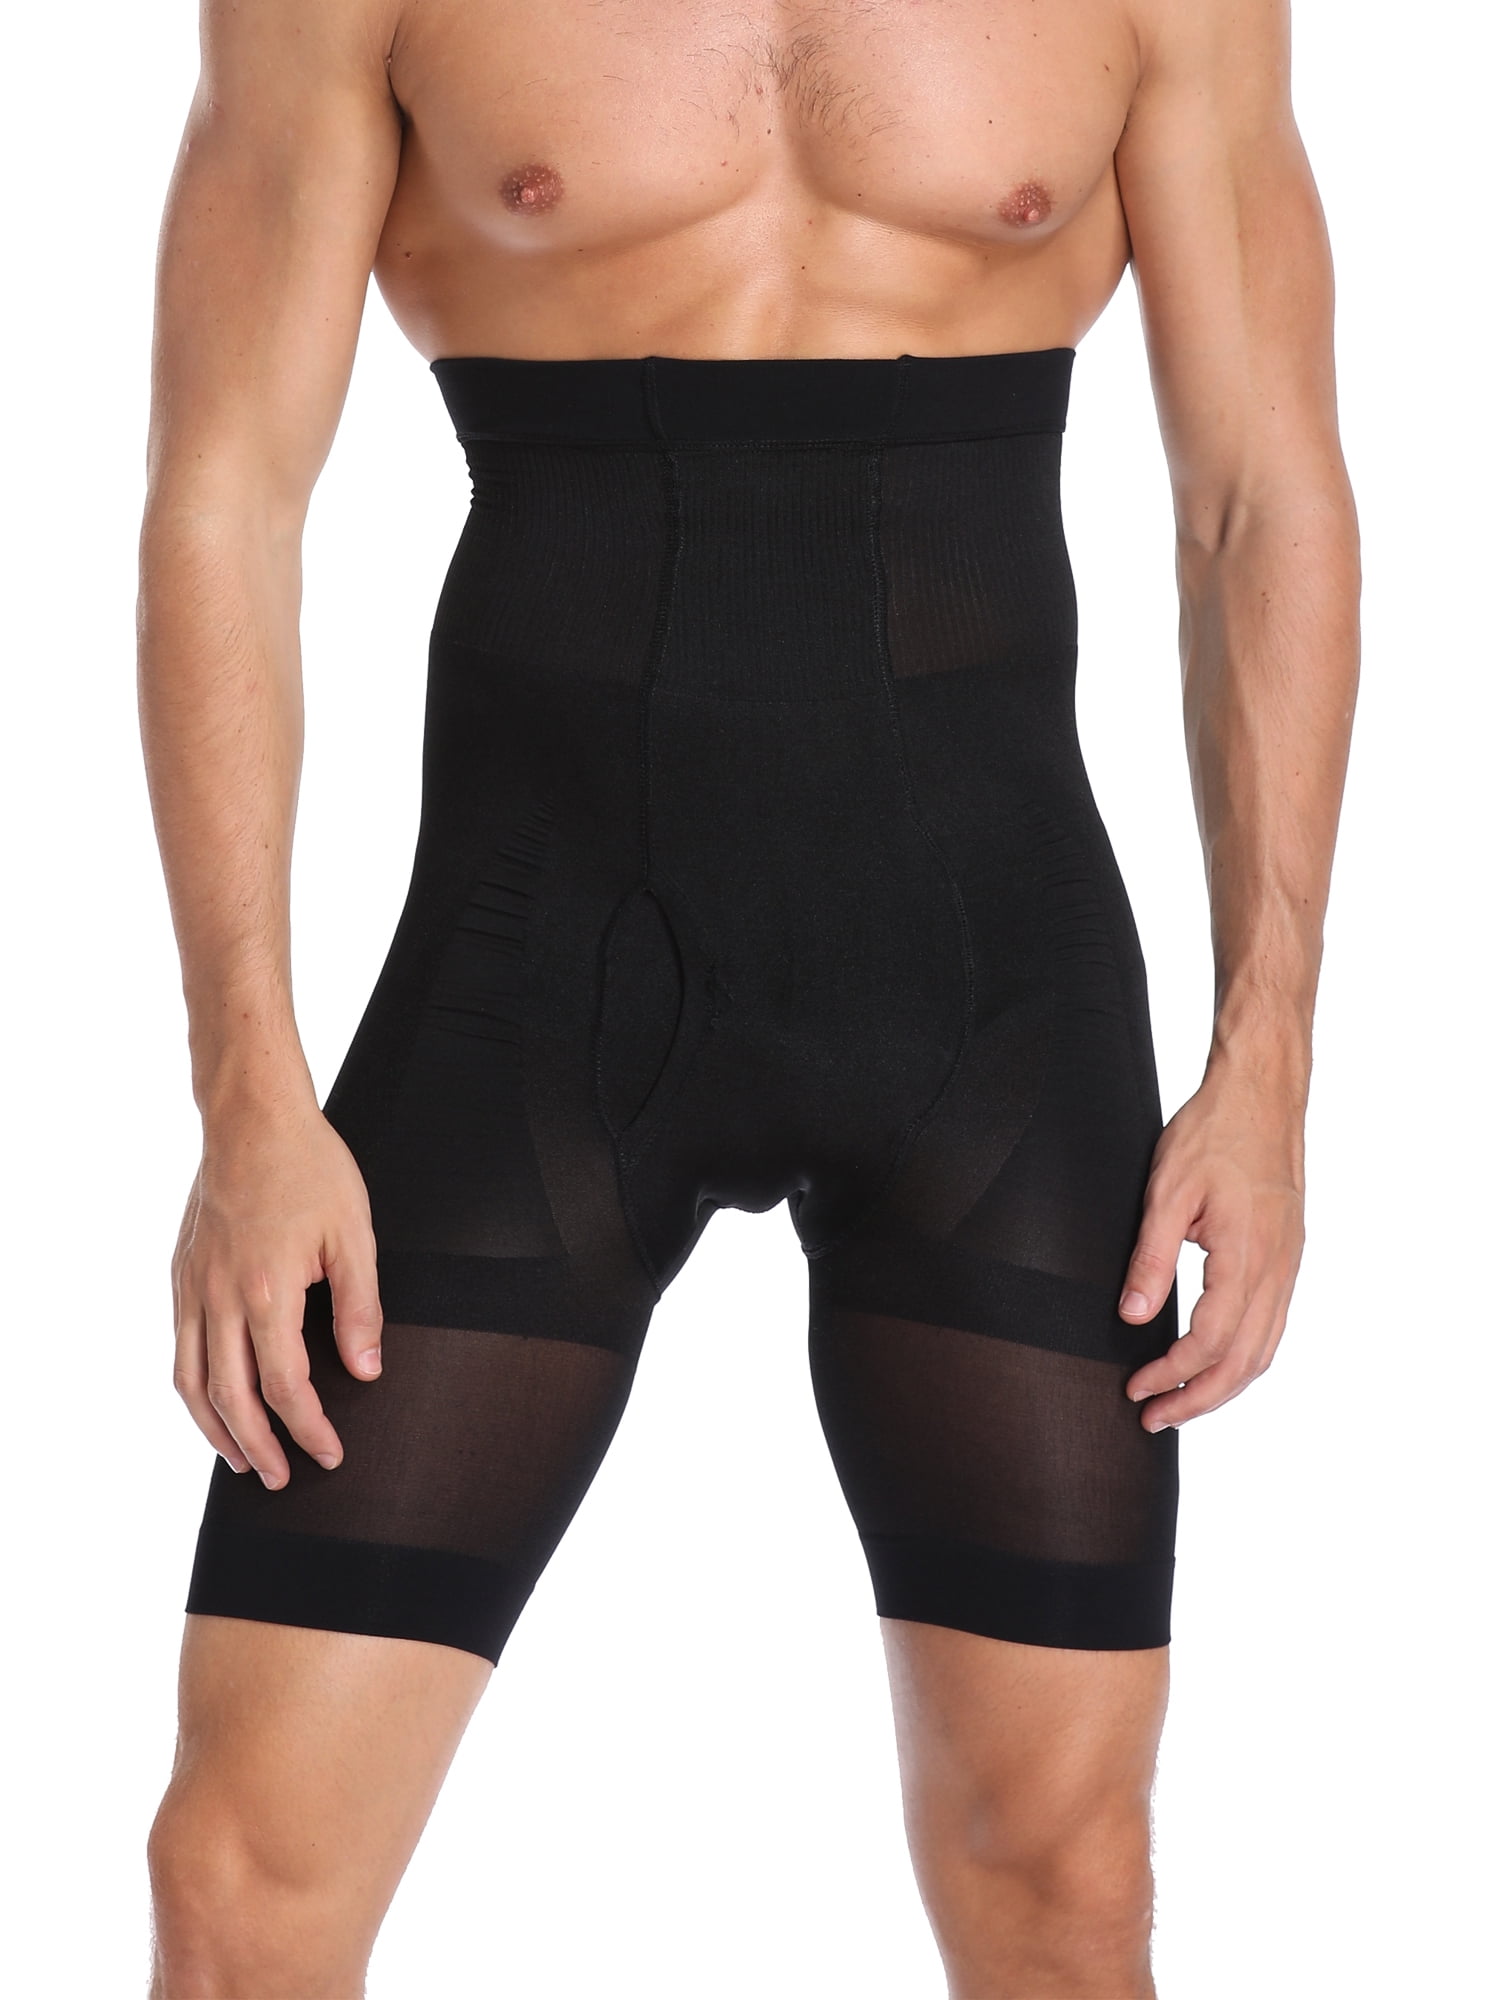 SLIMBELLE Men High Waist Slimming Shorts Brief Seamless Compression Tummy Control Underwear 